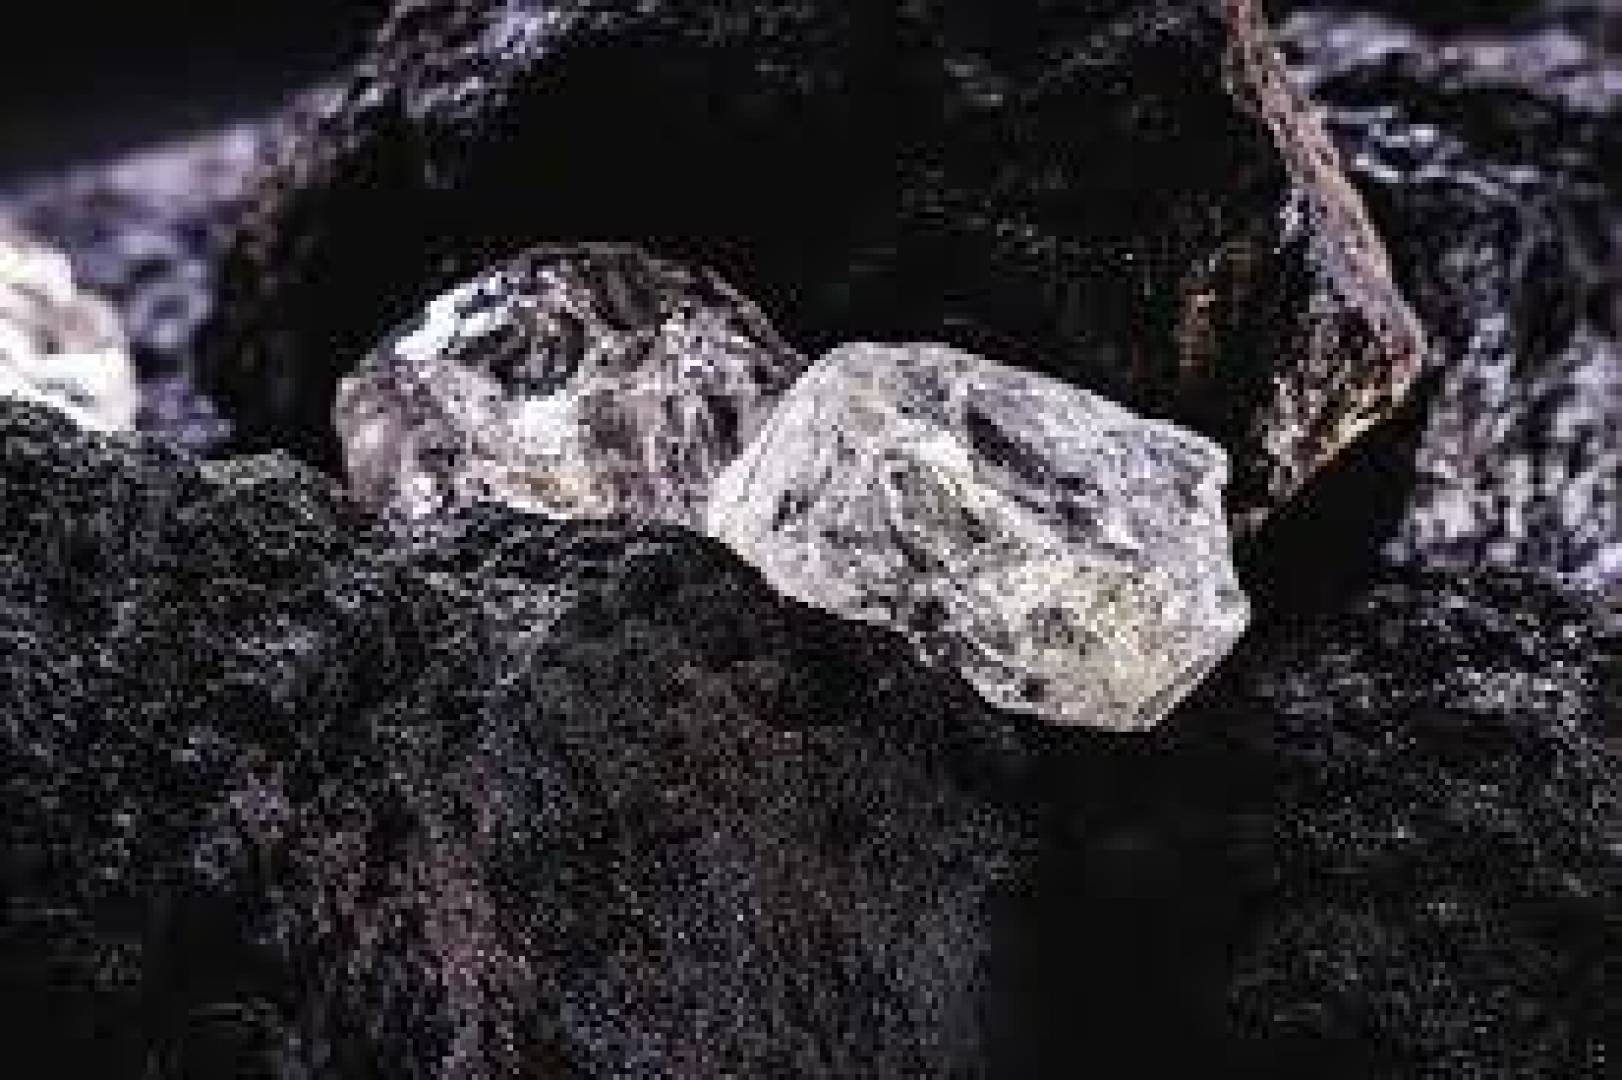 باحثون يفسرون كيف نشأت طبقات في وشاح الأرض ينمو فيها الماس